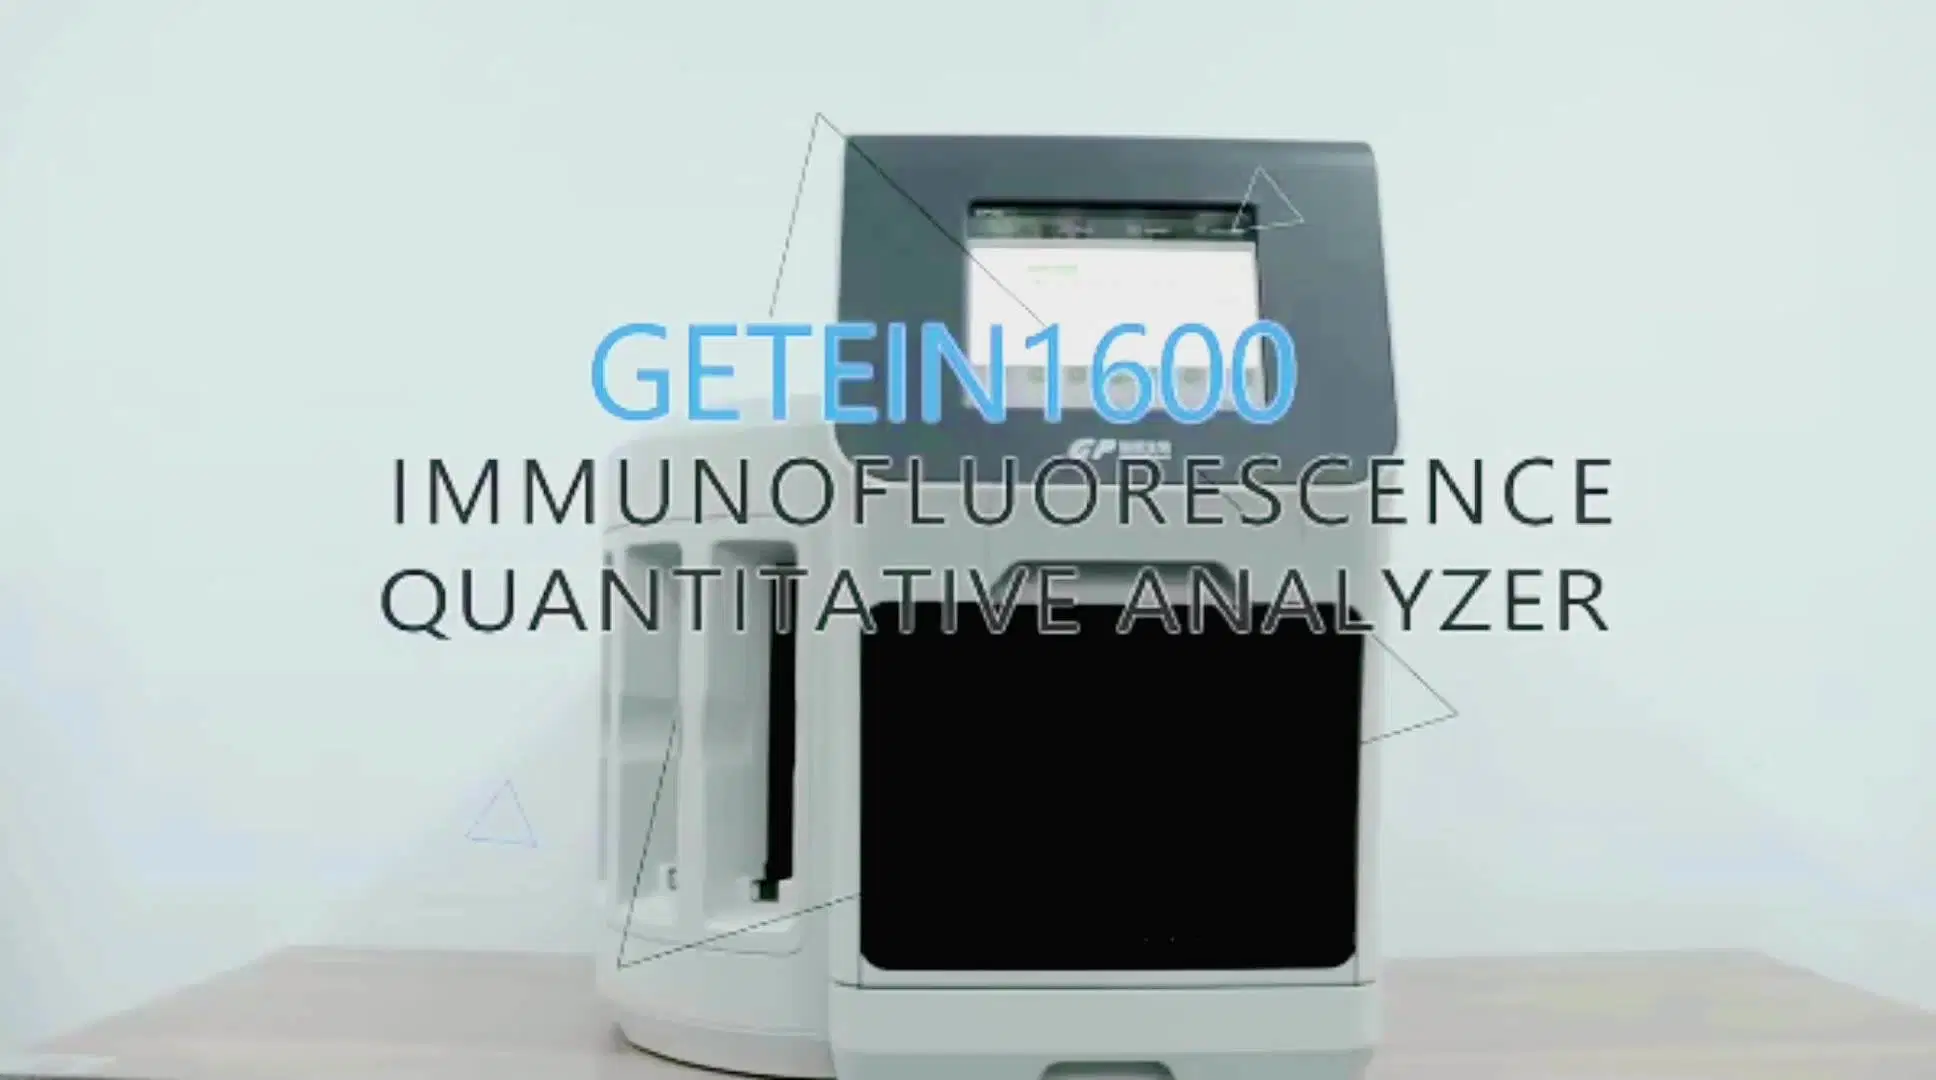 Analyseur immuno-quantitatif de fluorescence Getein 1600 pour test Eugenics